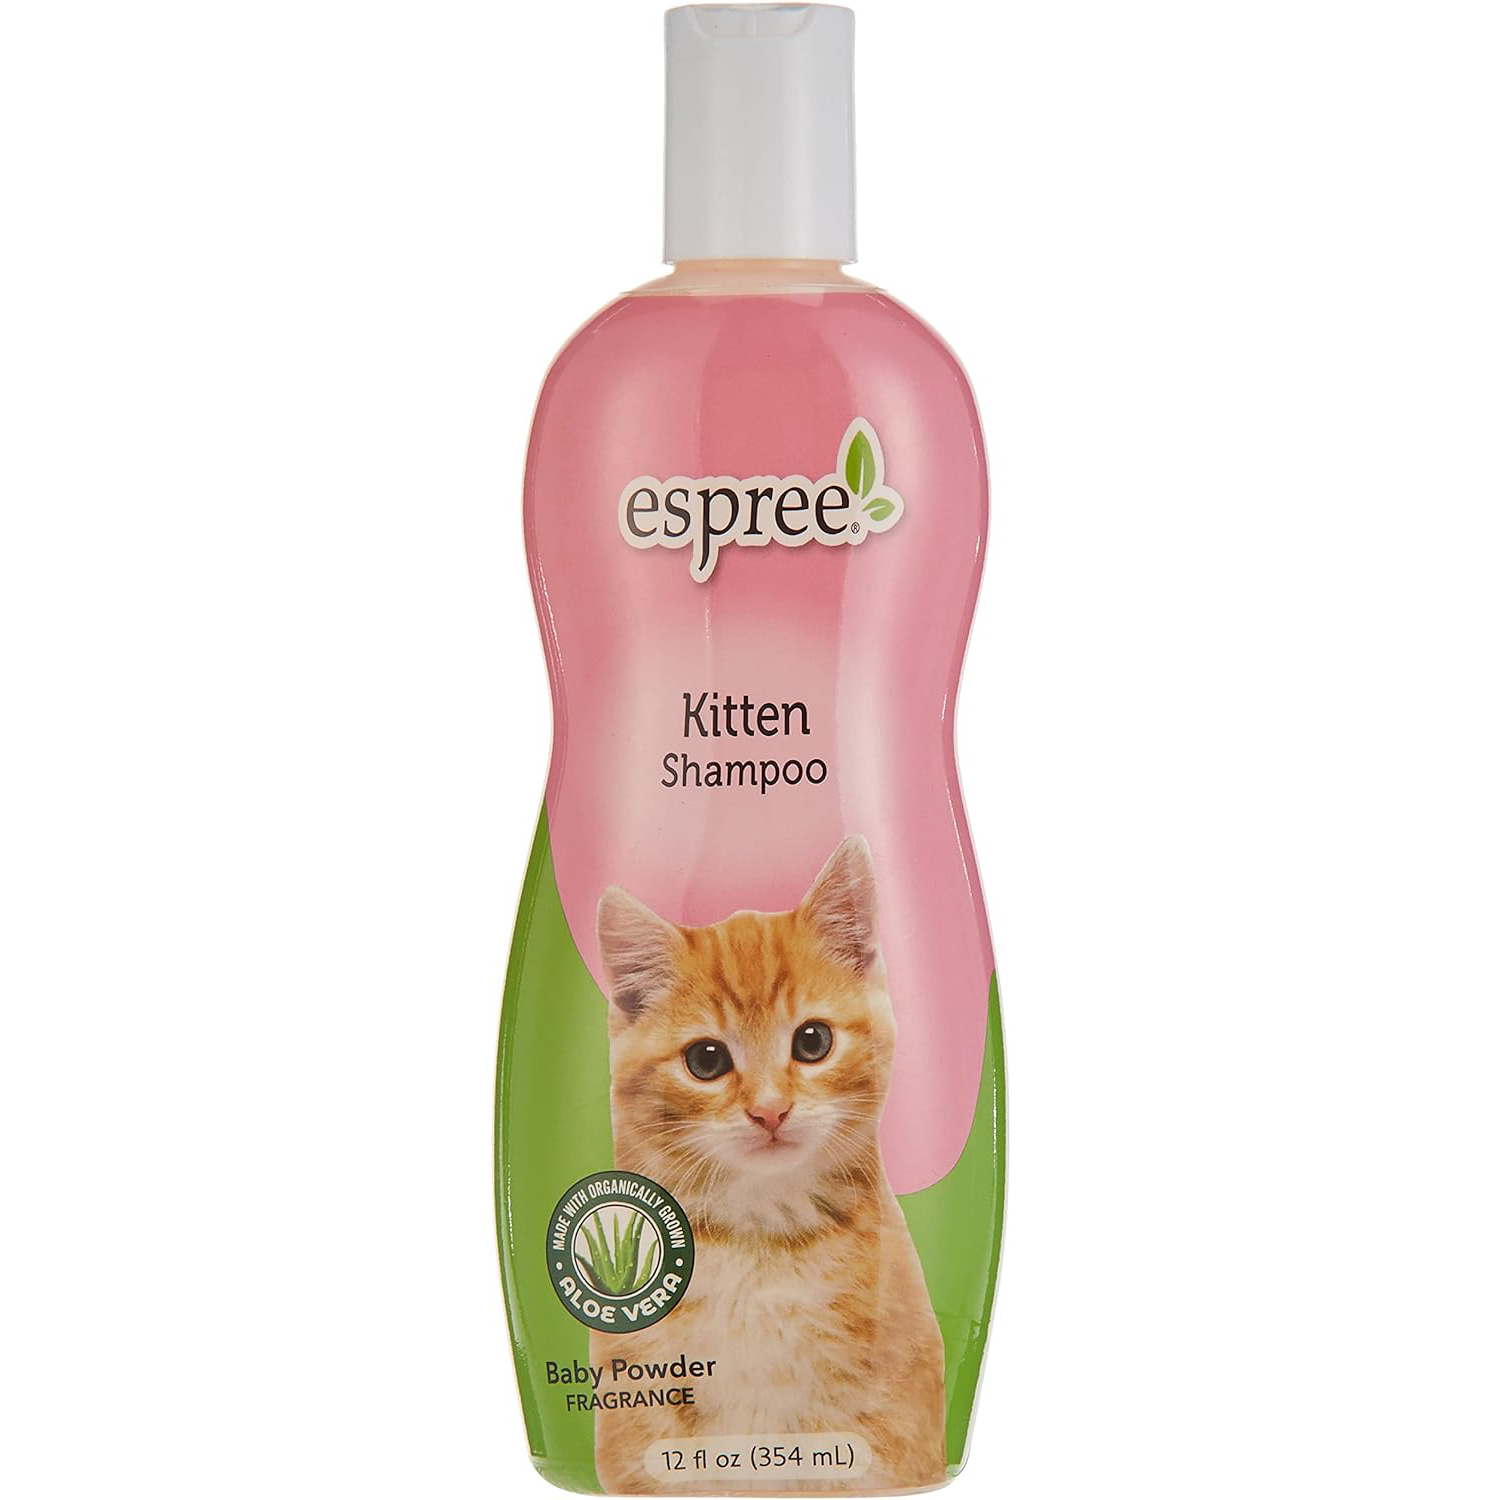 Espree Kitten Shampoo, 12 oz new